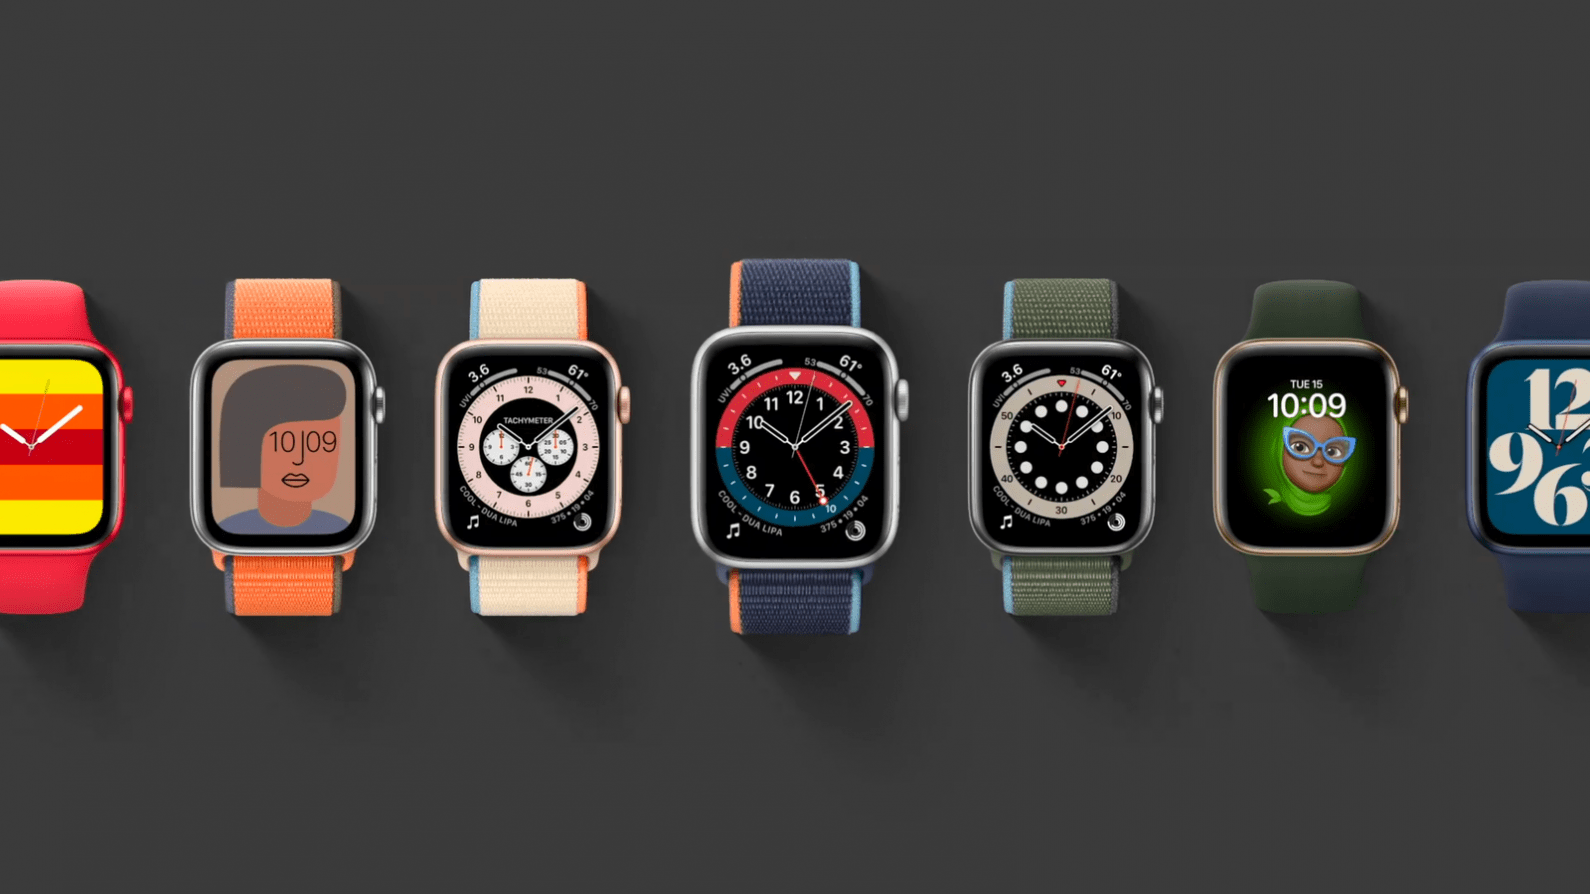 Apple Watch SE: Apple’s Surprise Value Watch Model